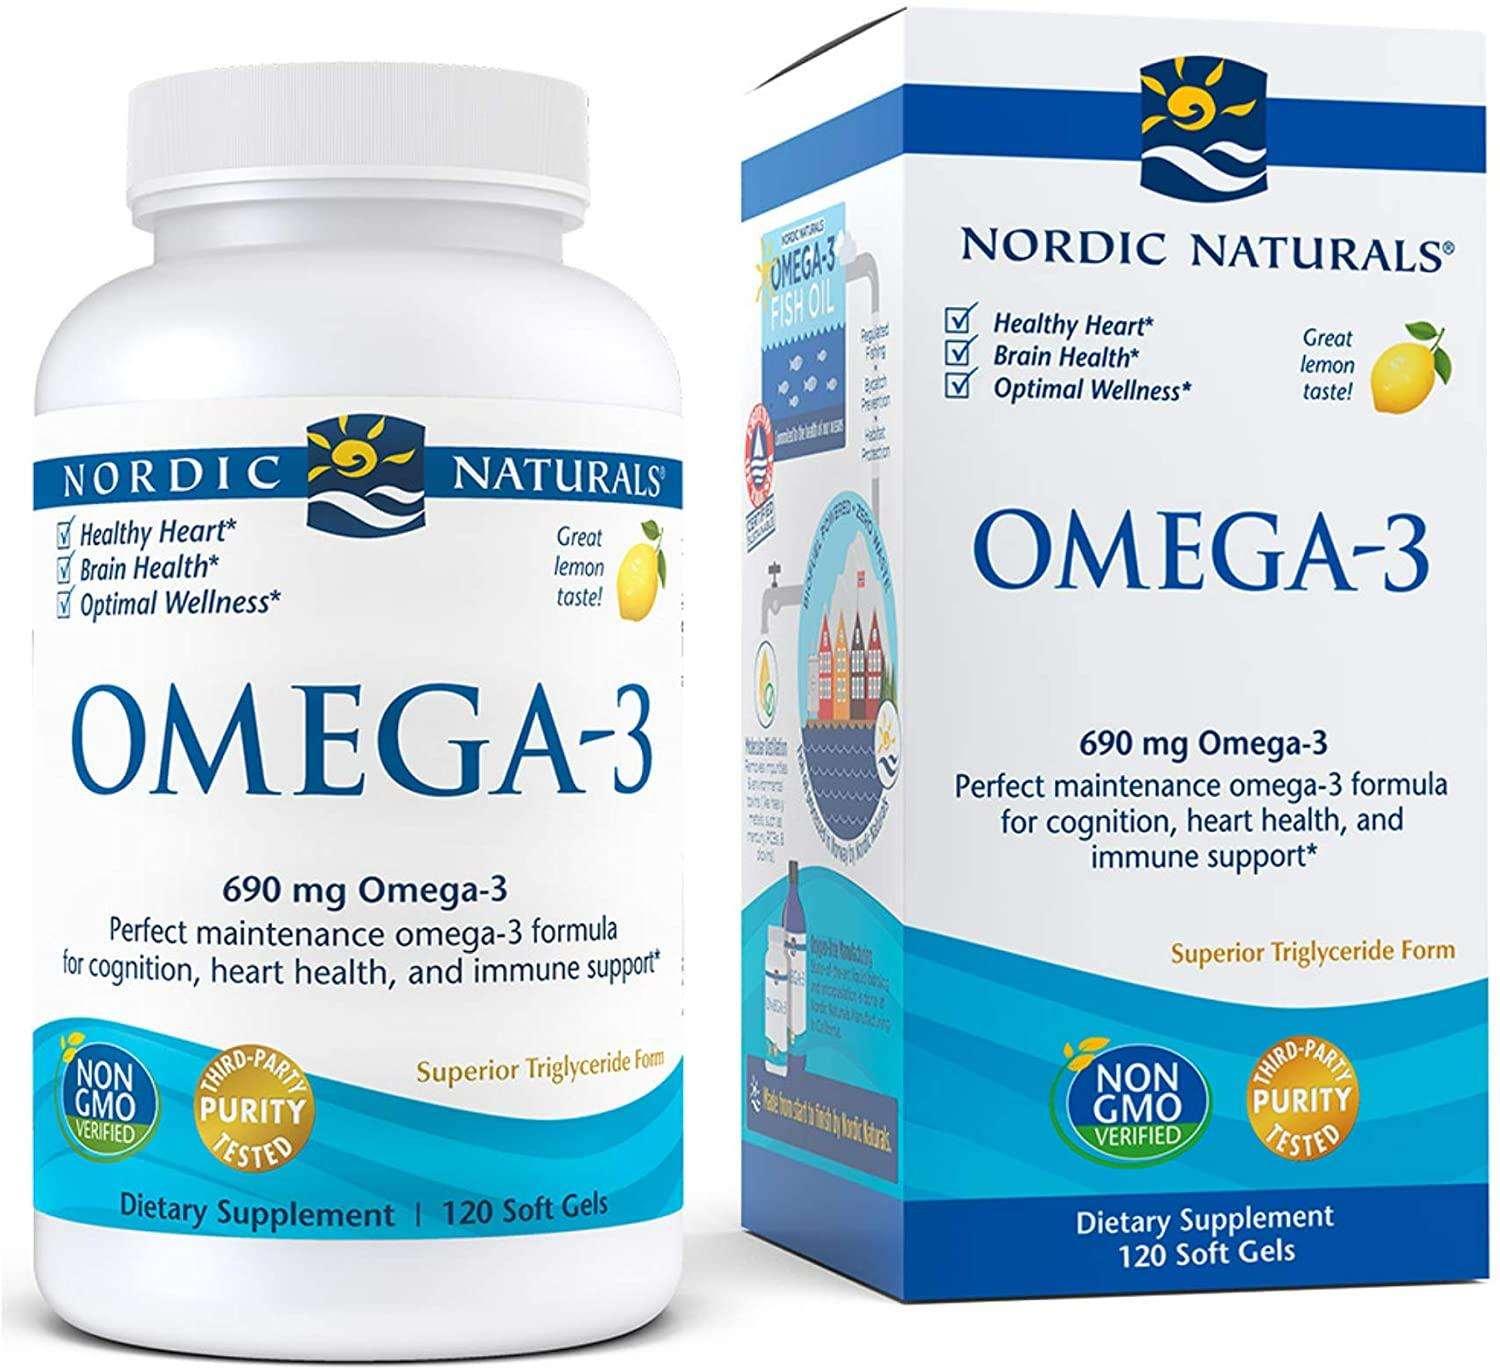 Nordic Naturals Omega-3, 690 mg, Sabor Limão 120 Caps Gels - NutriVita